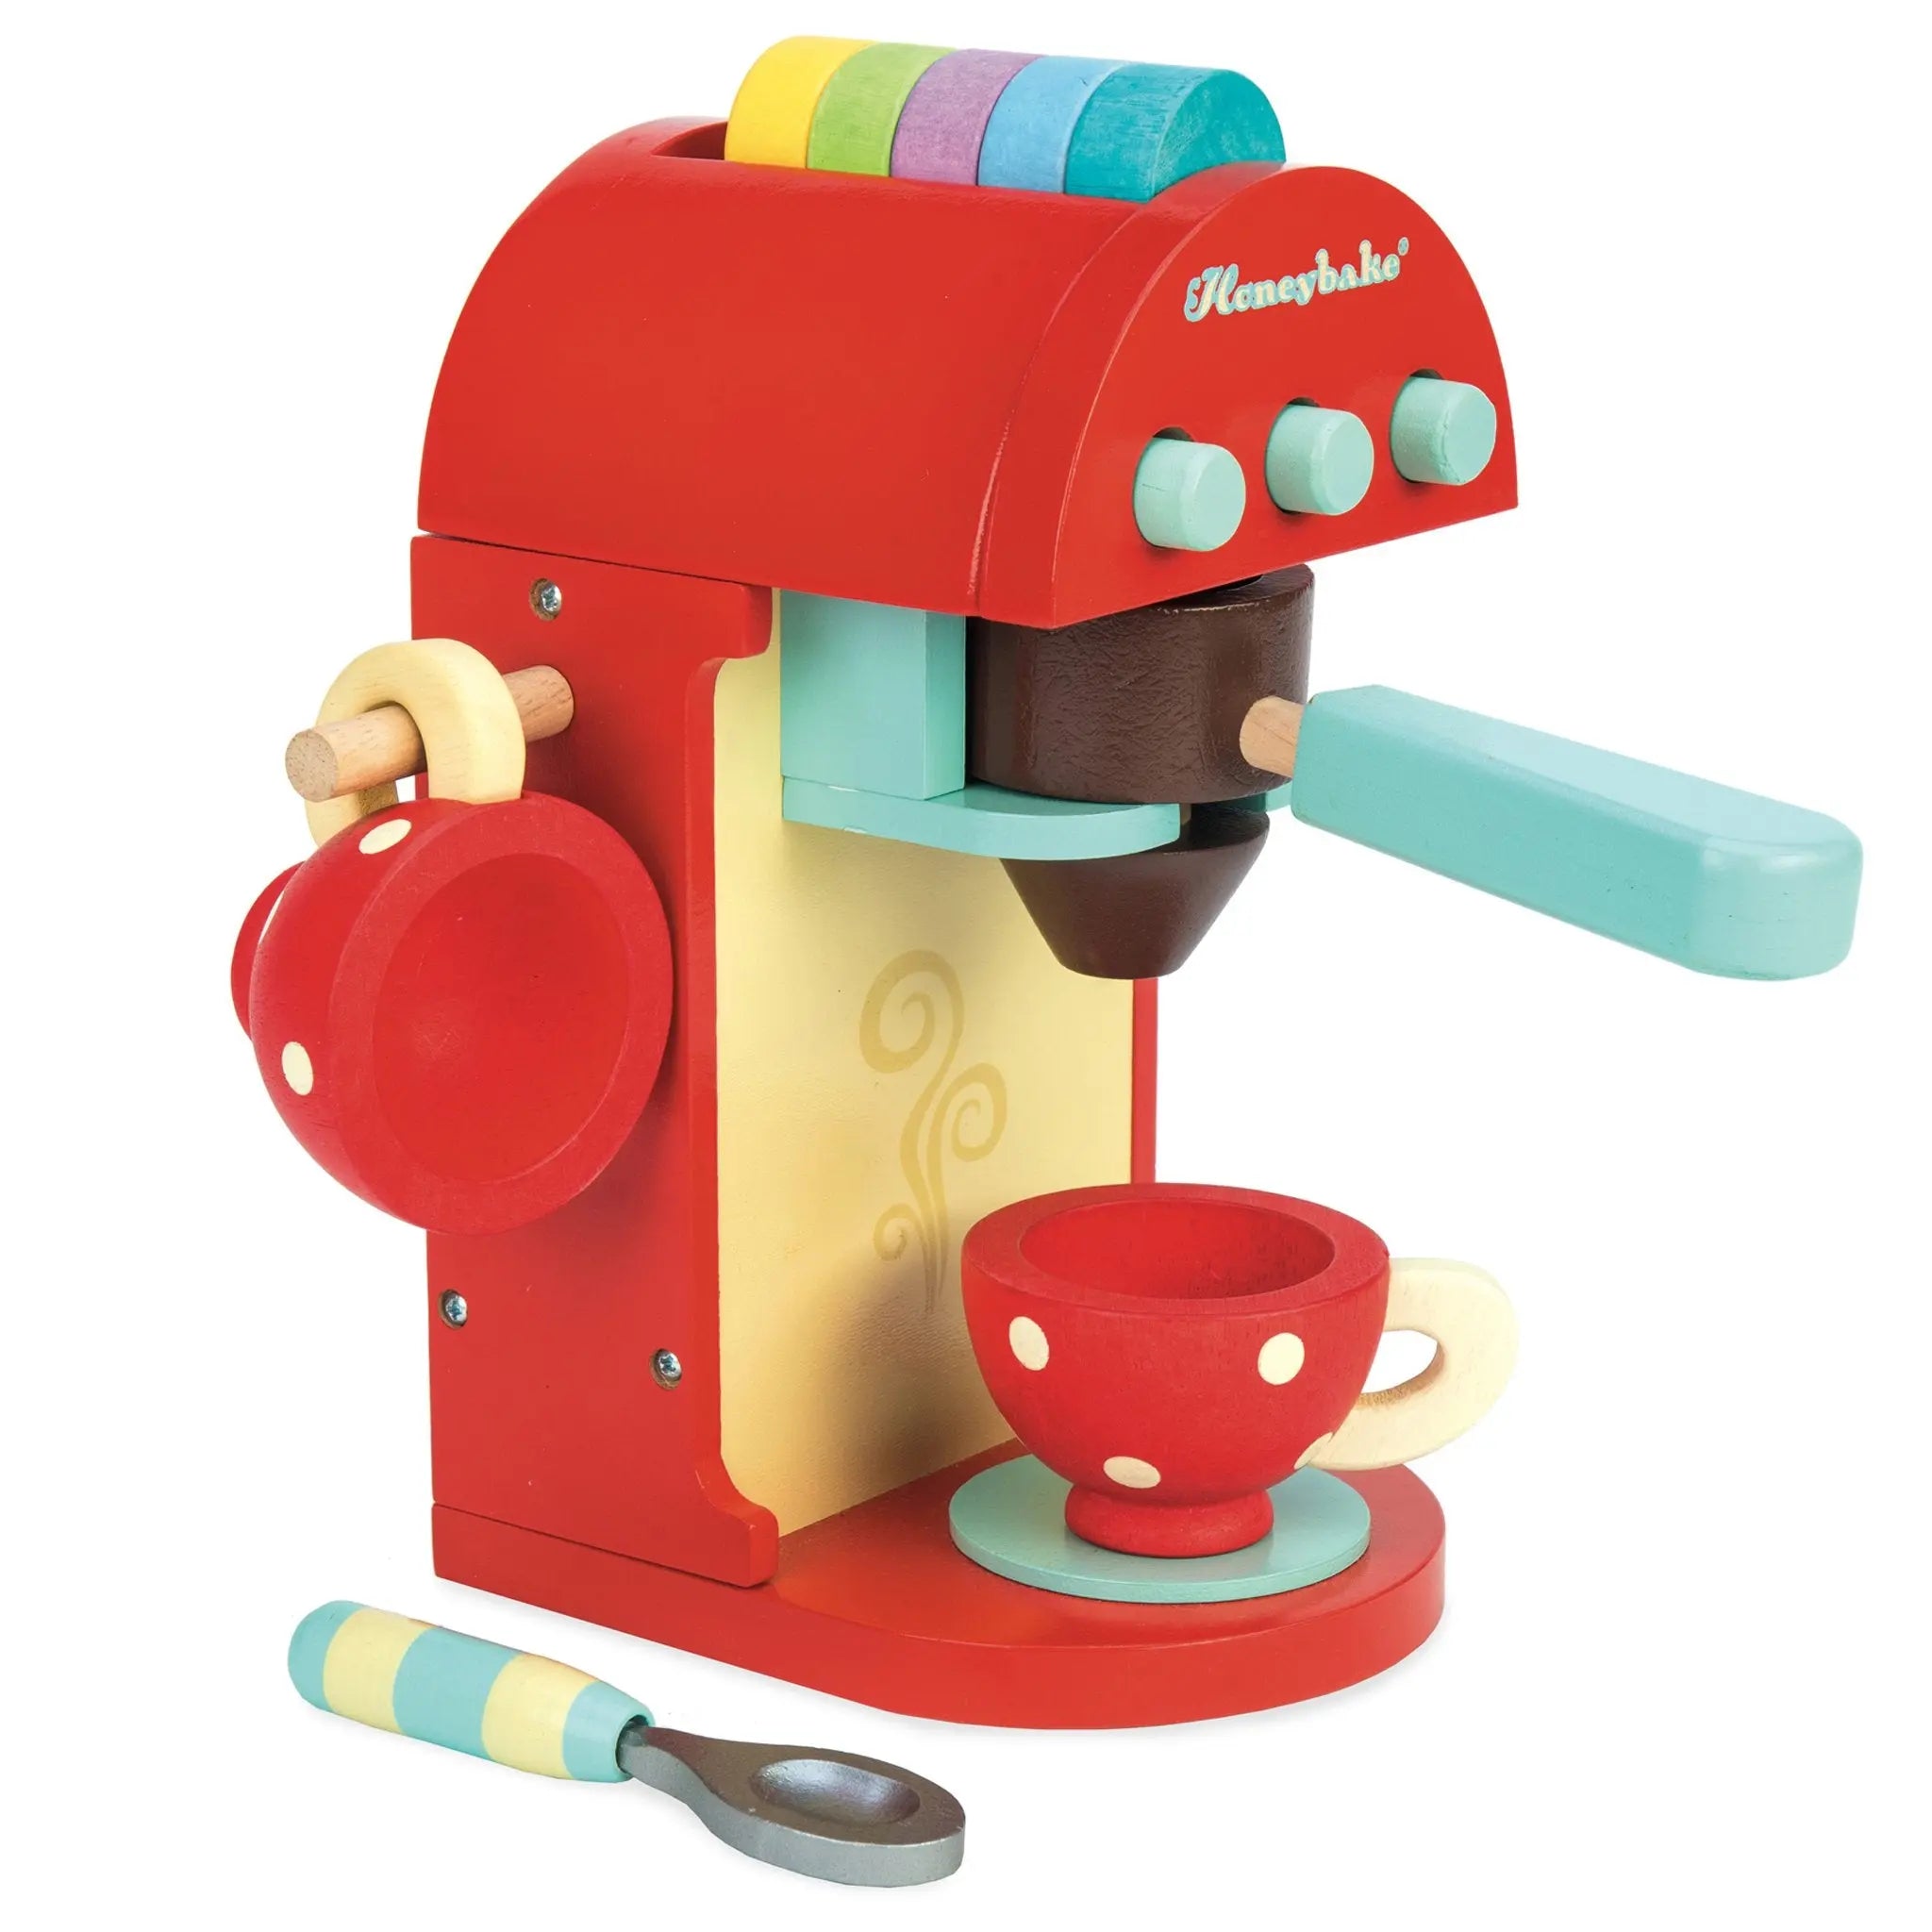 Cafe Machine-Wooden toys & more-Le Toy Van-Blue Almonds-London-South Kensington